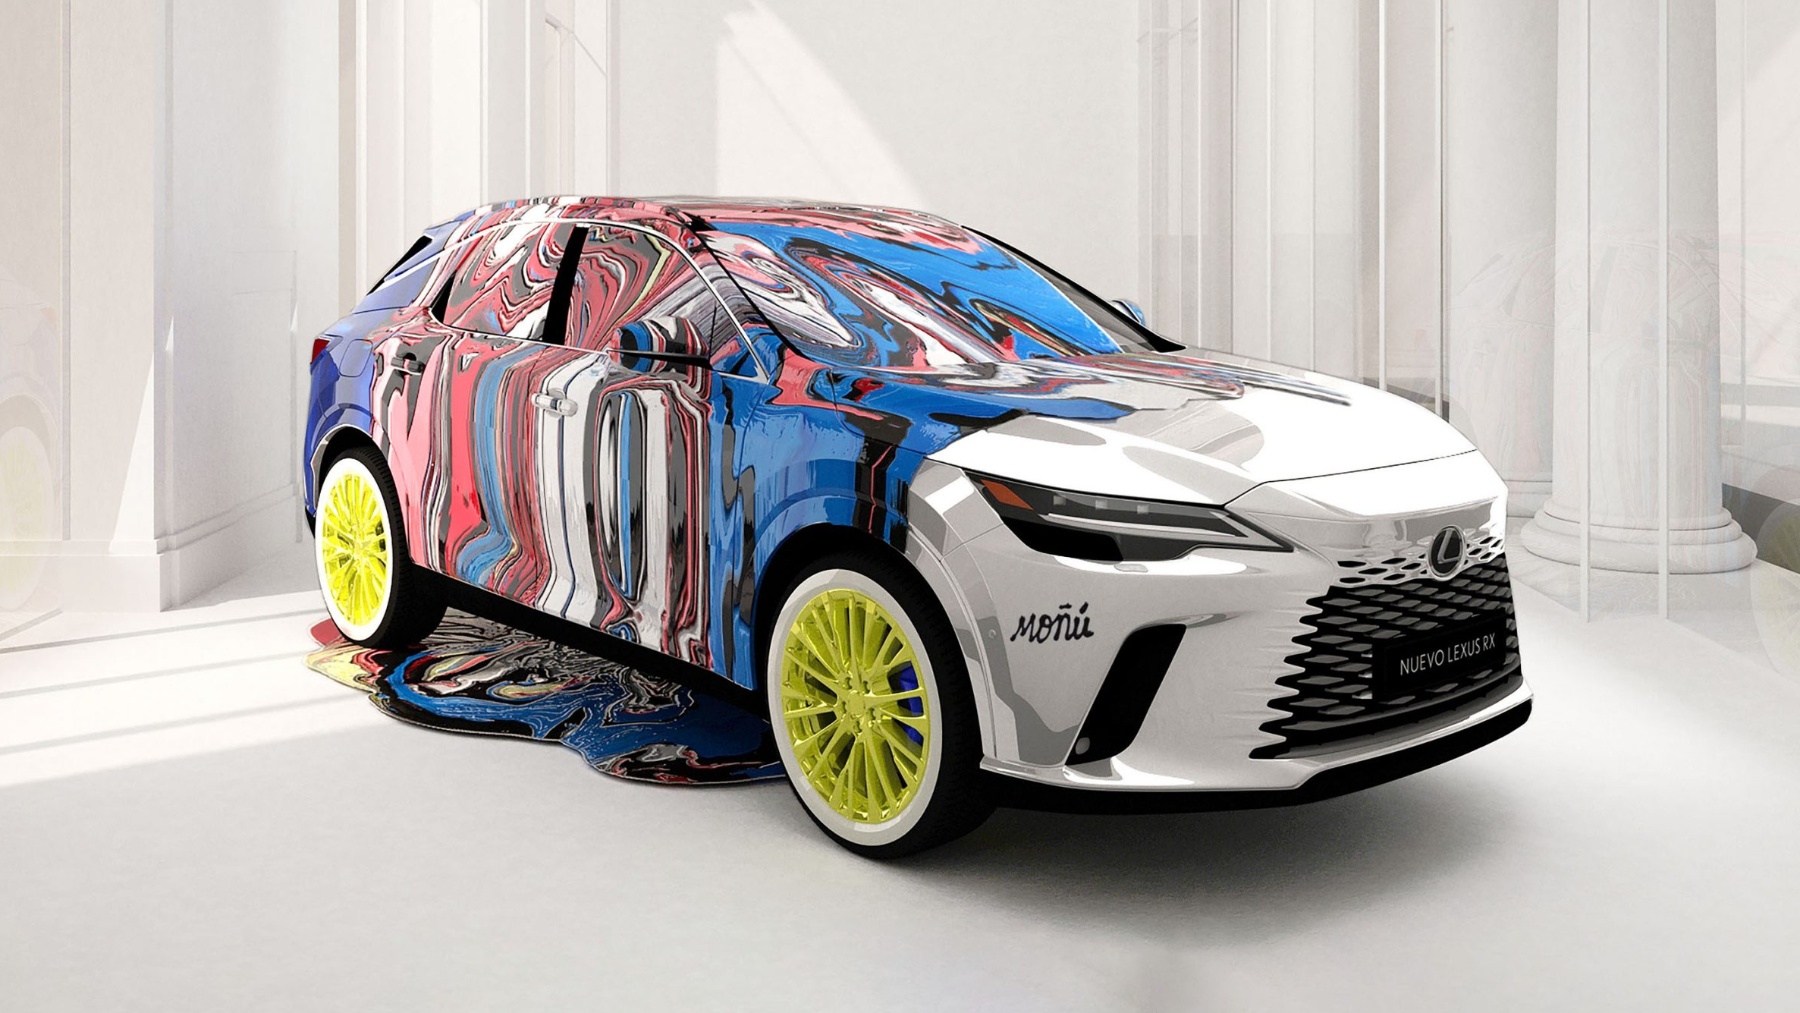 El diseño ganador de José Moñú. (Lexus)